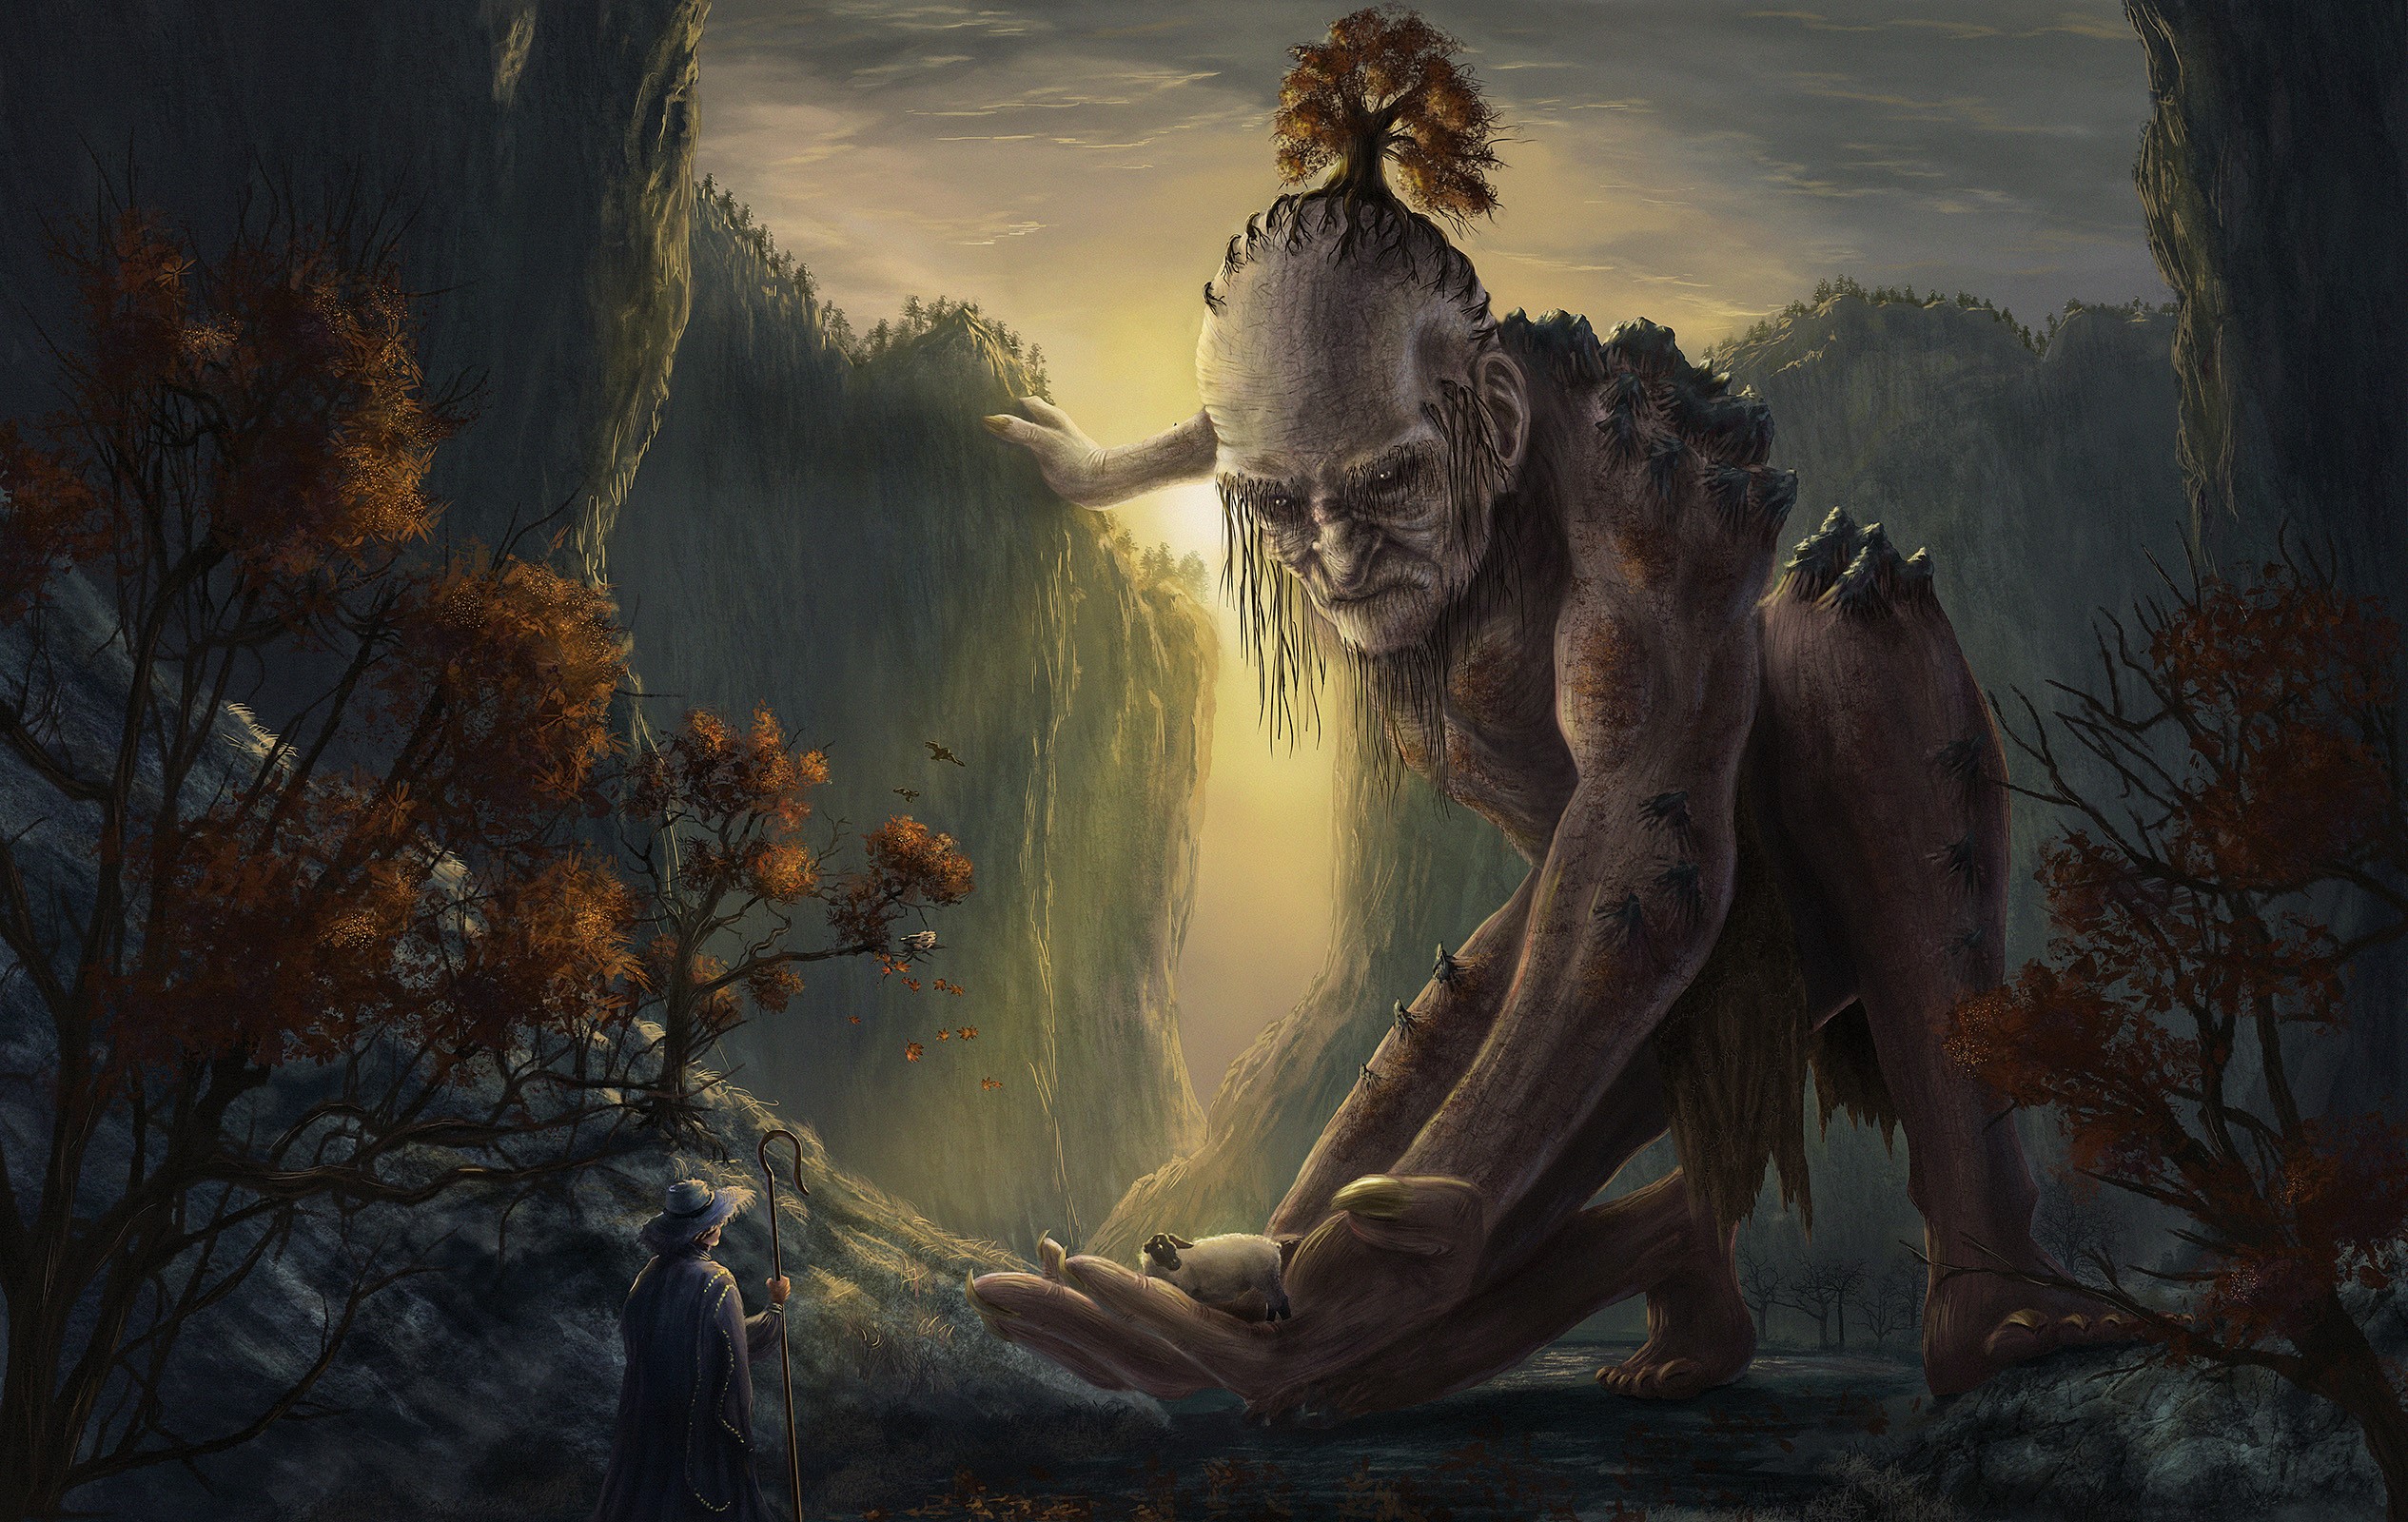 Mountain Monster by Markus Stadlober